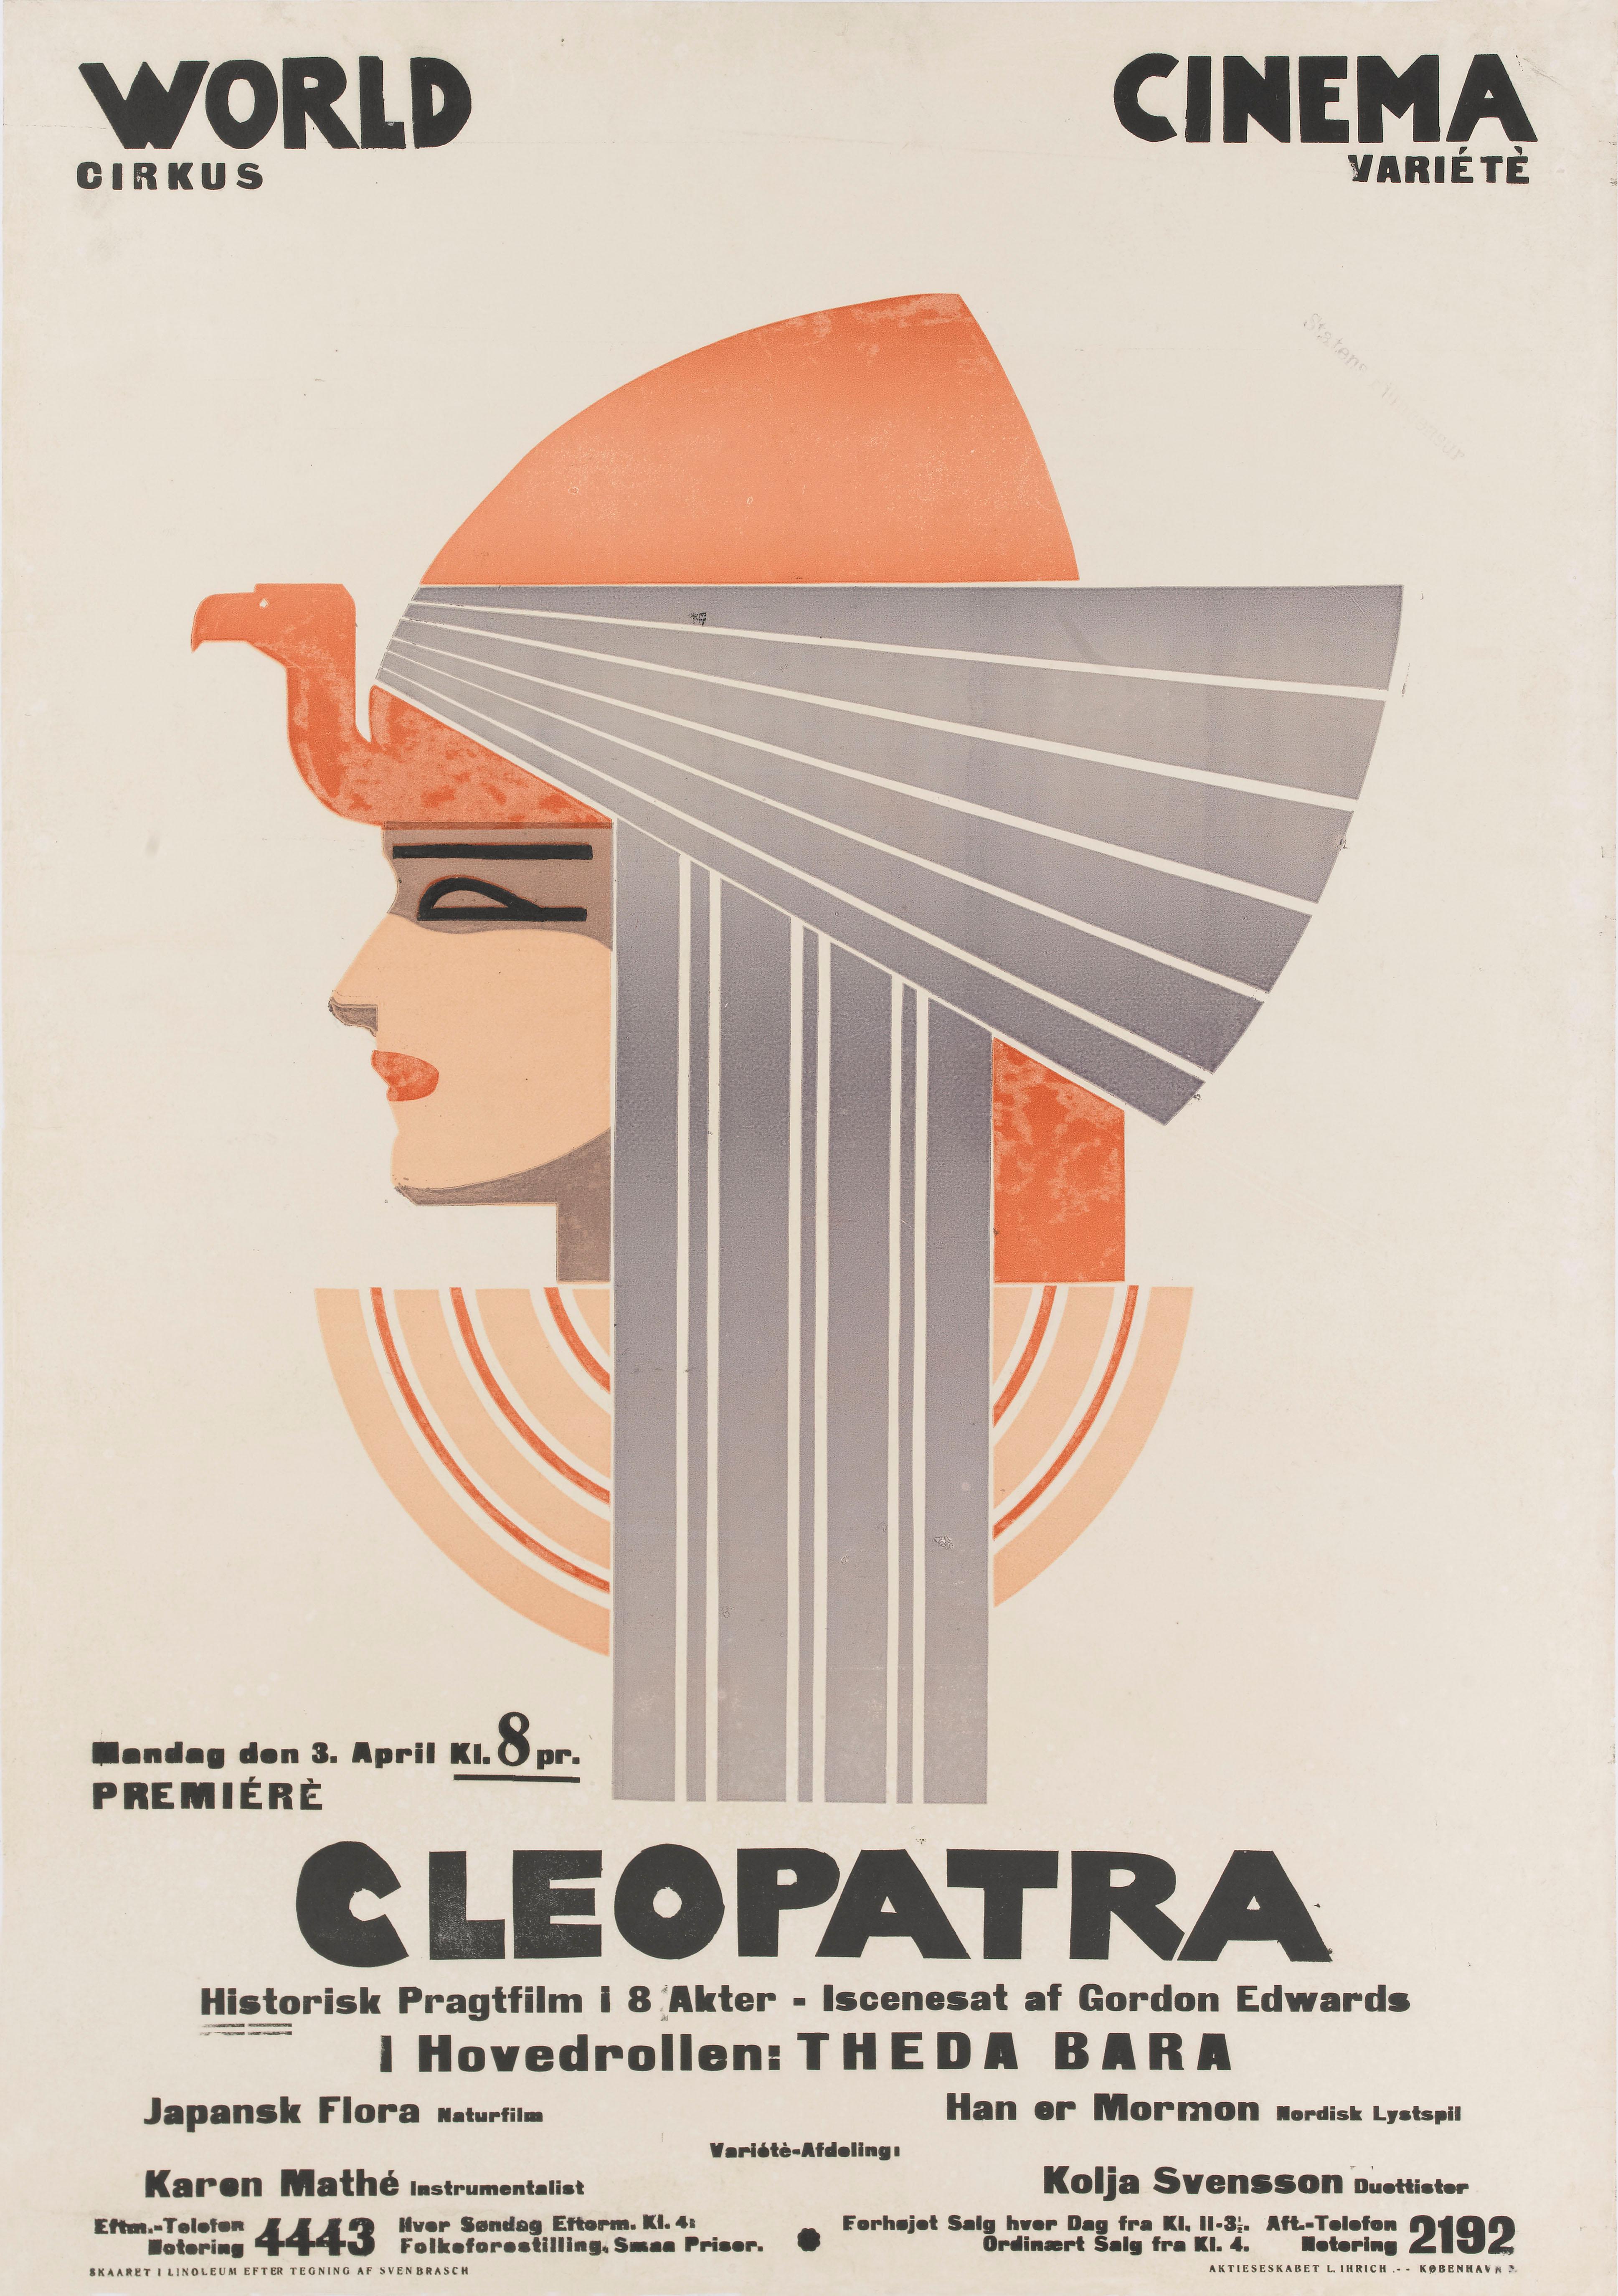 Original dänisches Filmplakat. Erste dänische Veröffentlichung 1921.

Von dem Stummfilm Cleopatra aus dem Jahr 1917 ist heute nur noch ein brüchiges Fragment übrig, das nicht länger als ein paar Sekunden dauert. Damals war der Film einer der